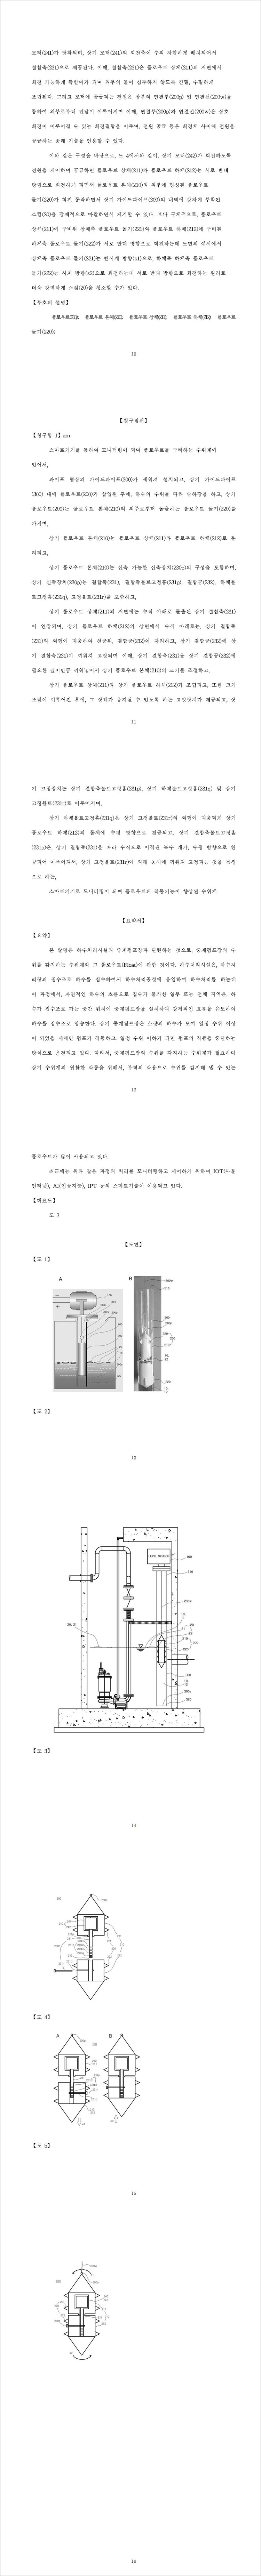 특허 제10-2500385호(스마트기기로 모니터링이 되며 플로우트의 작동기능이 향상된 수위계,  박두현, 